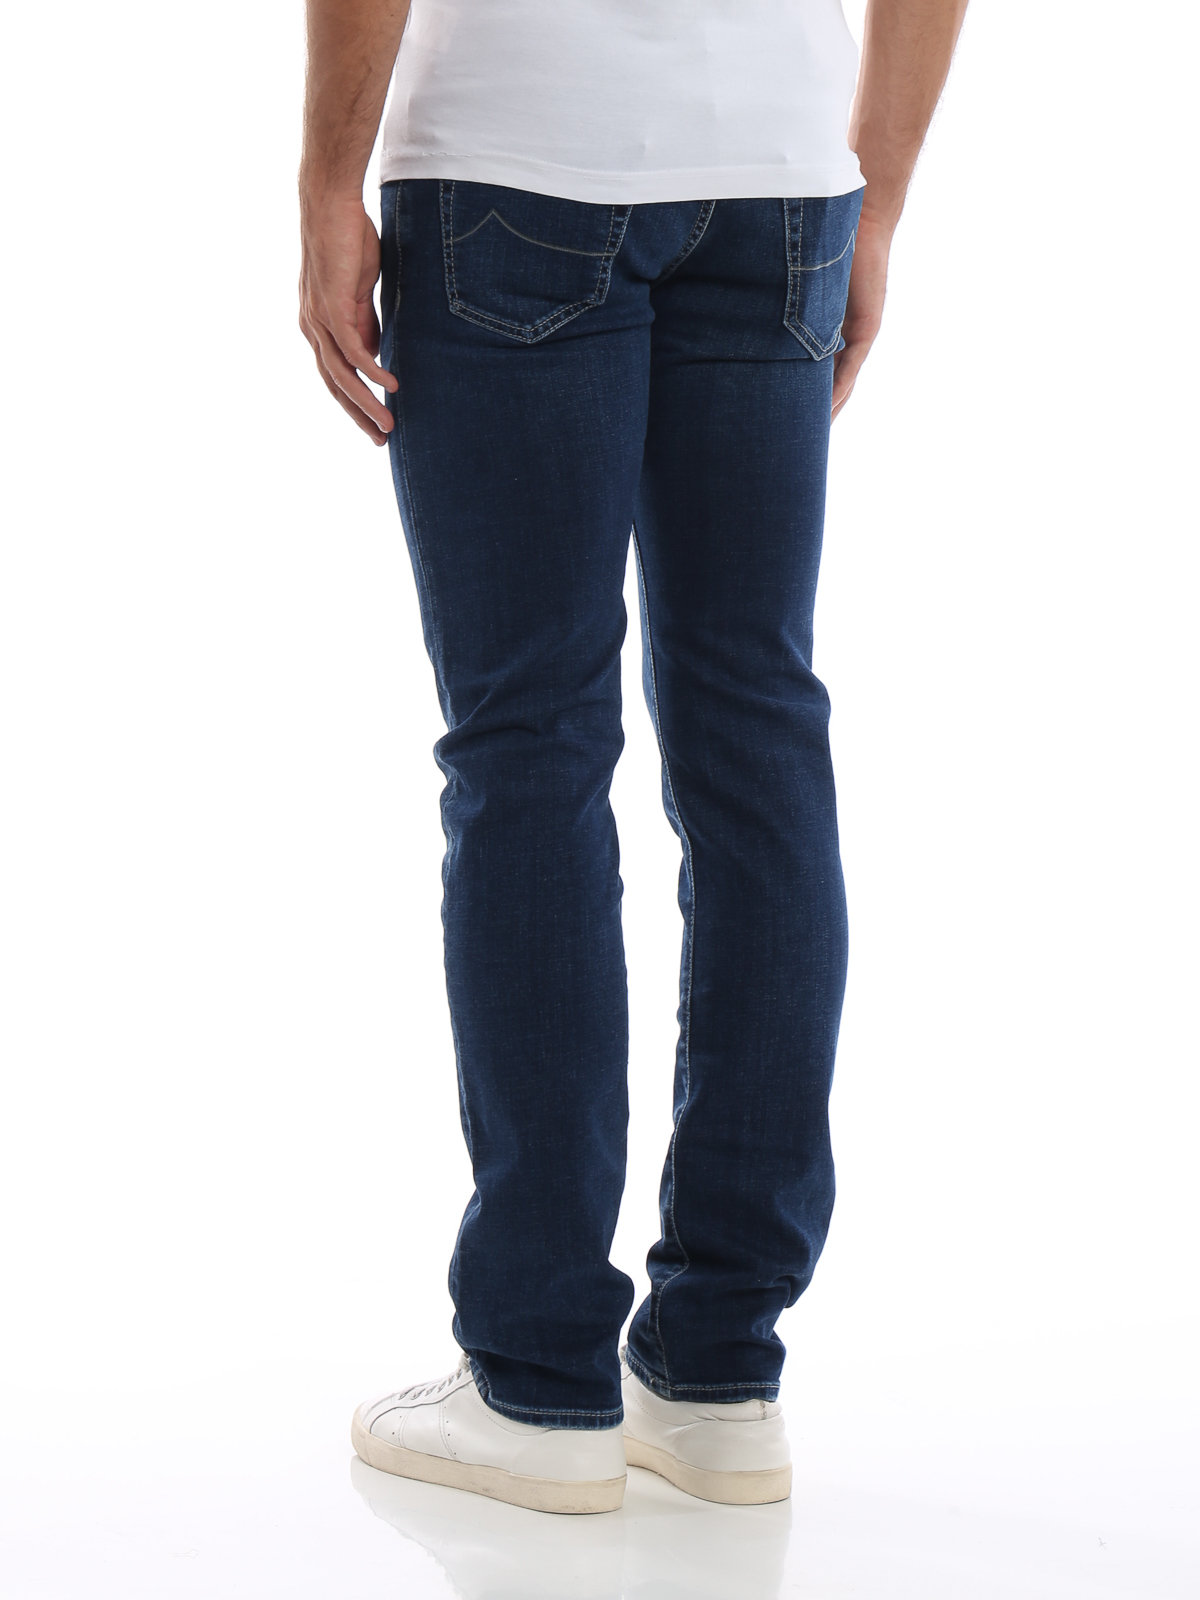 niezen commentator Klaar Straight leg jeans Jacob Cohen - Grey calfhair tag style 622 medium wash  jeans - J62200703W3